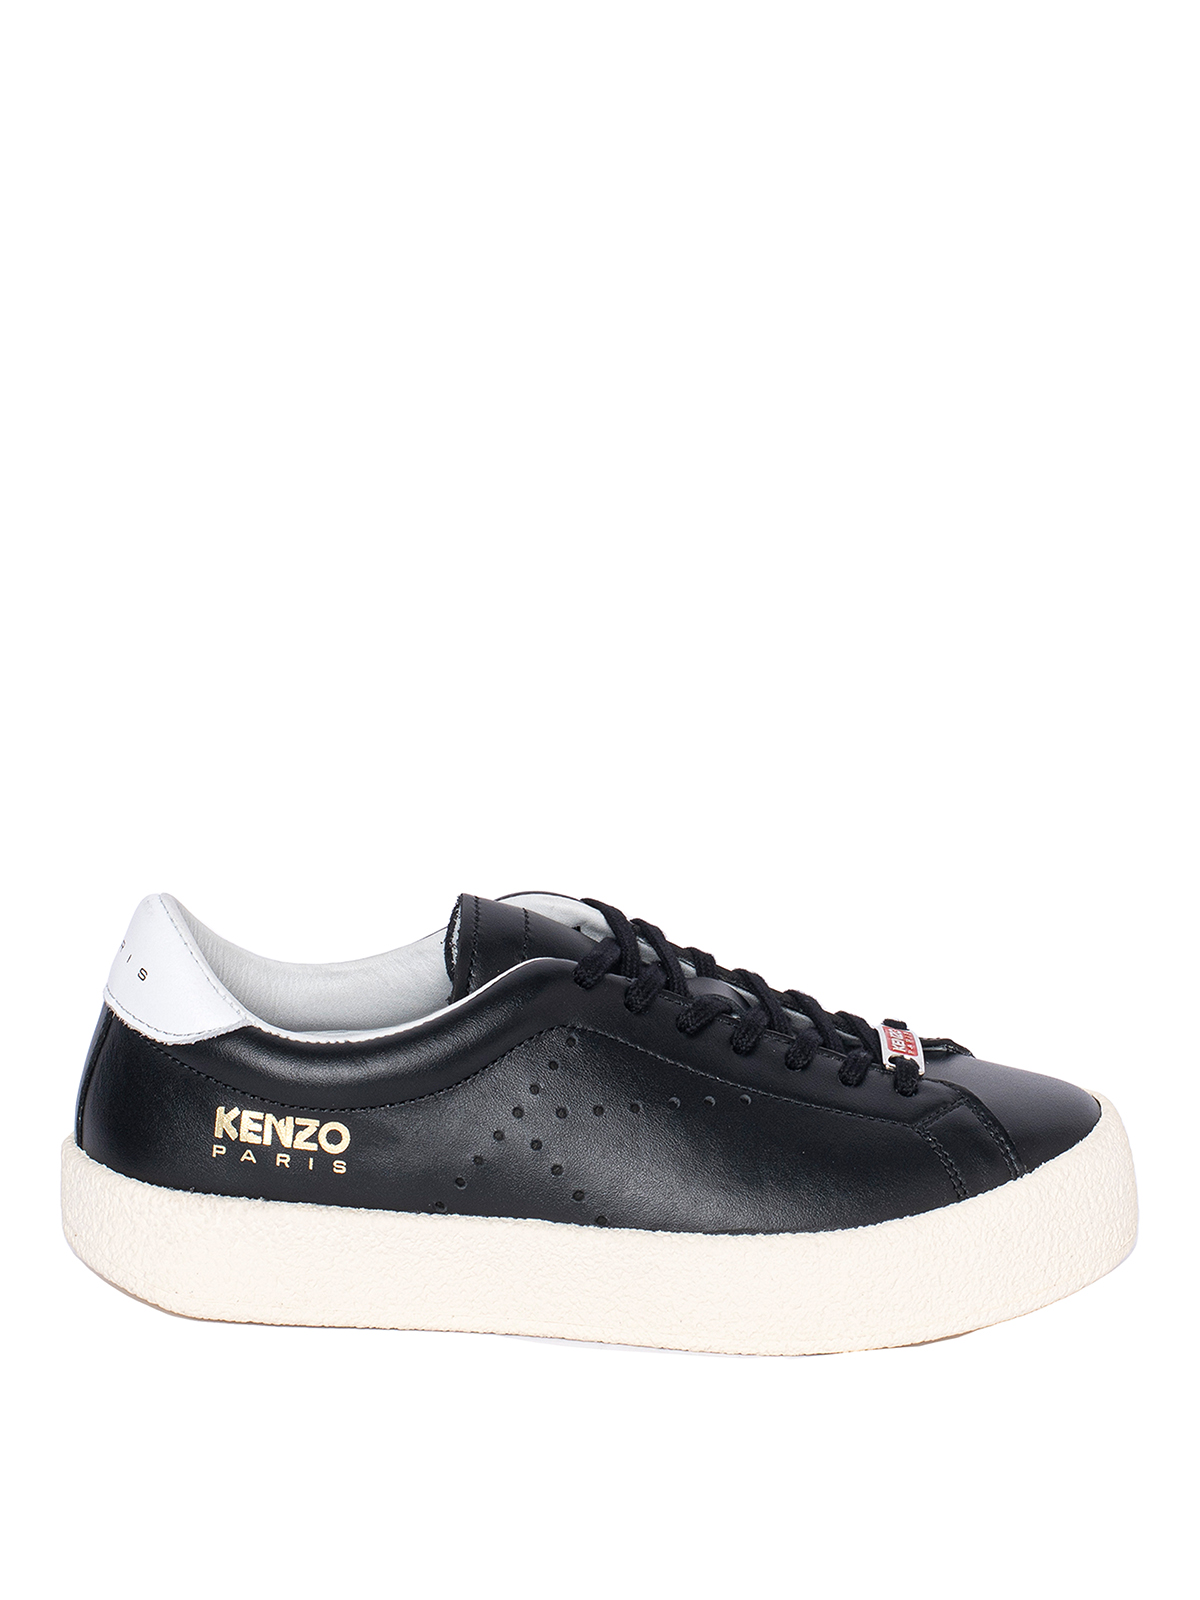 Kenzo Swing Low Top Sneakers In Black